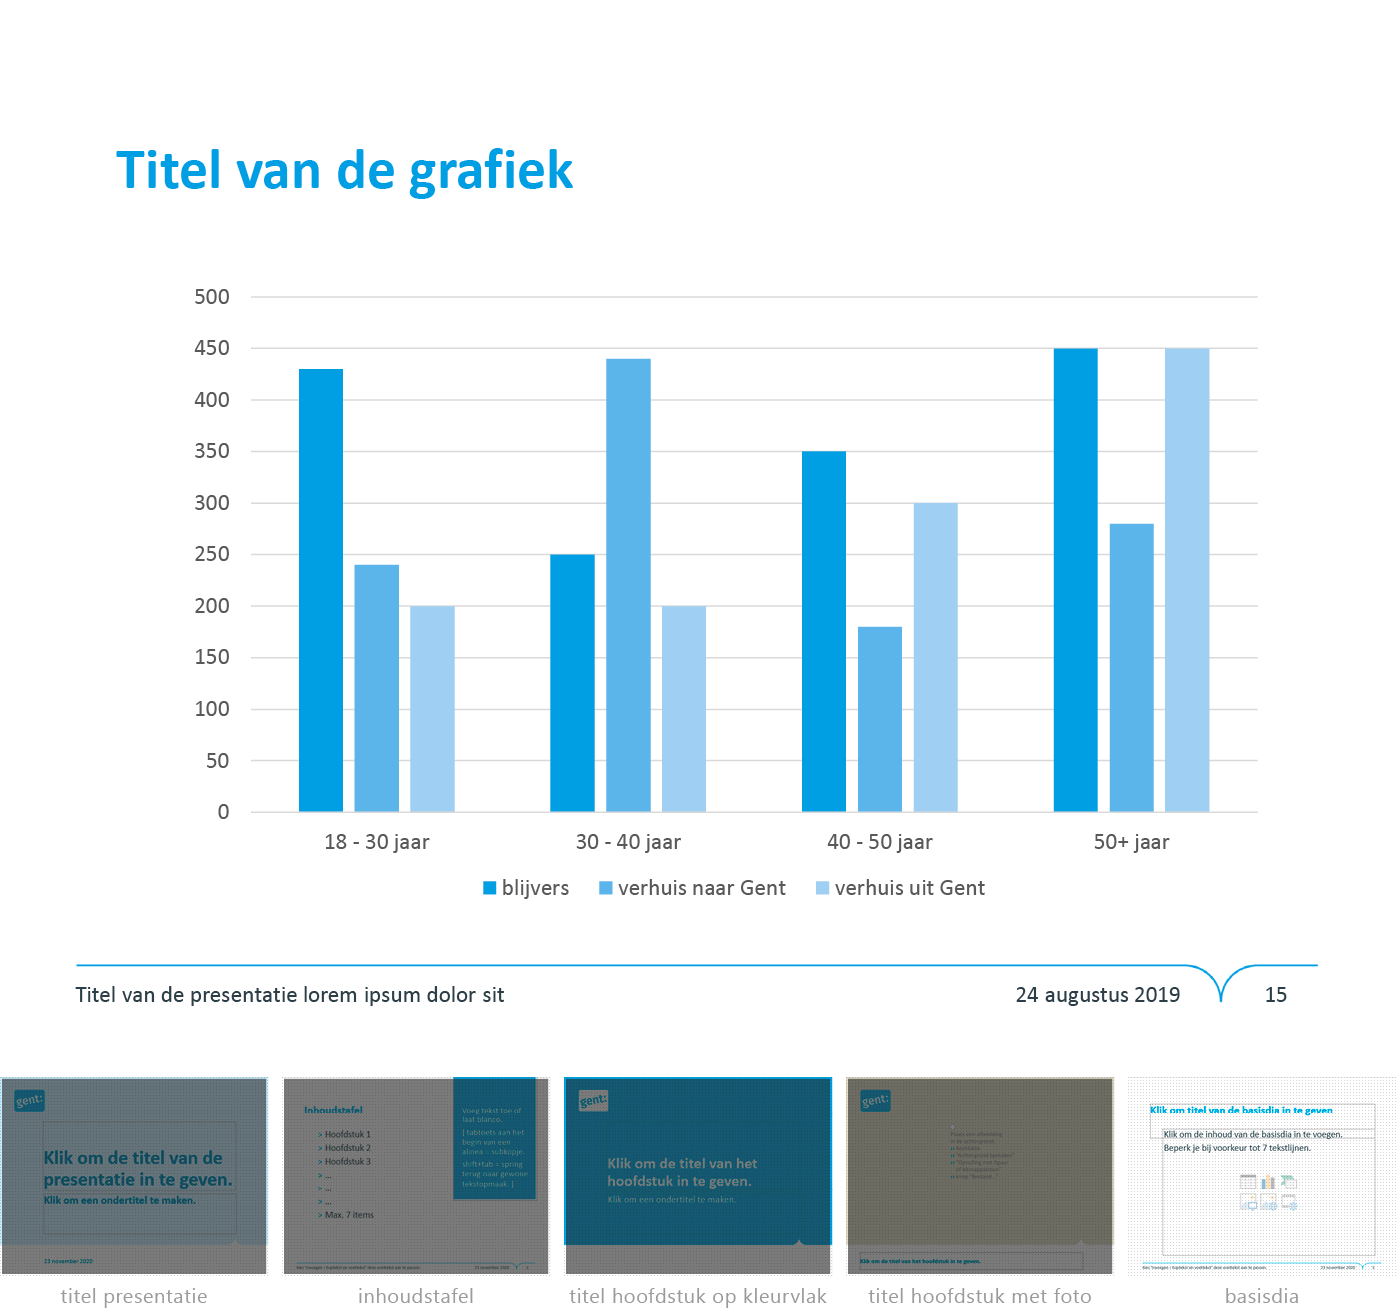 Grafiek ingevoegd in dia-type "basisdia" uit het Powerpoint-sjabloon van de Stad Gent